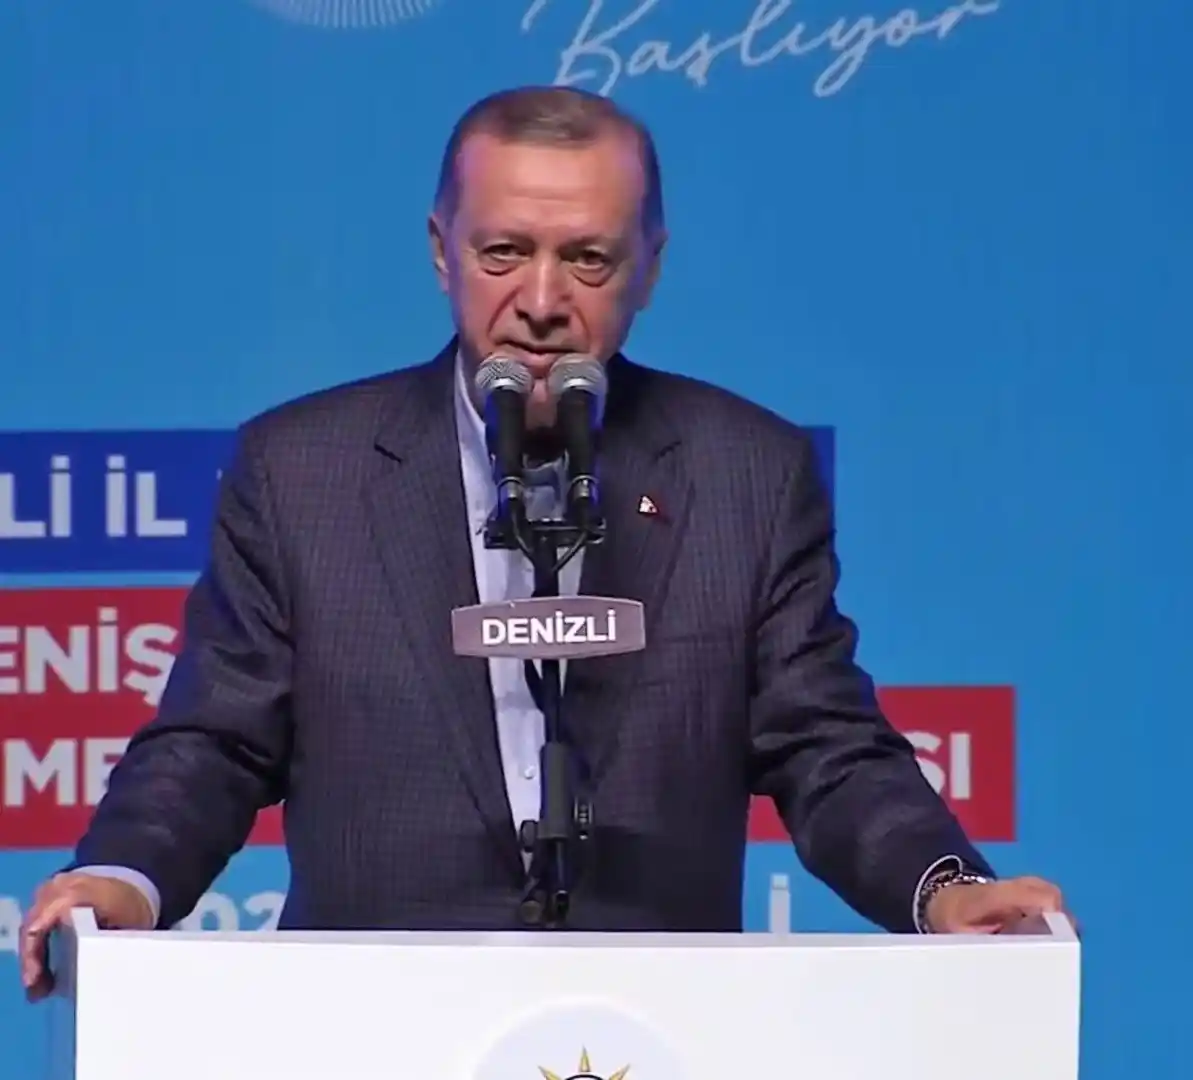 Cumhurbaşkanı Erdoğan: "Beceremiyorlarsa aday bulma konusunda kendilerine yardımcı olabiliriz"
